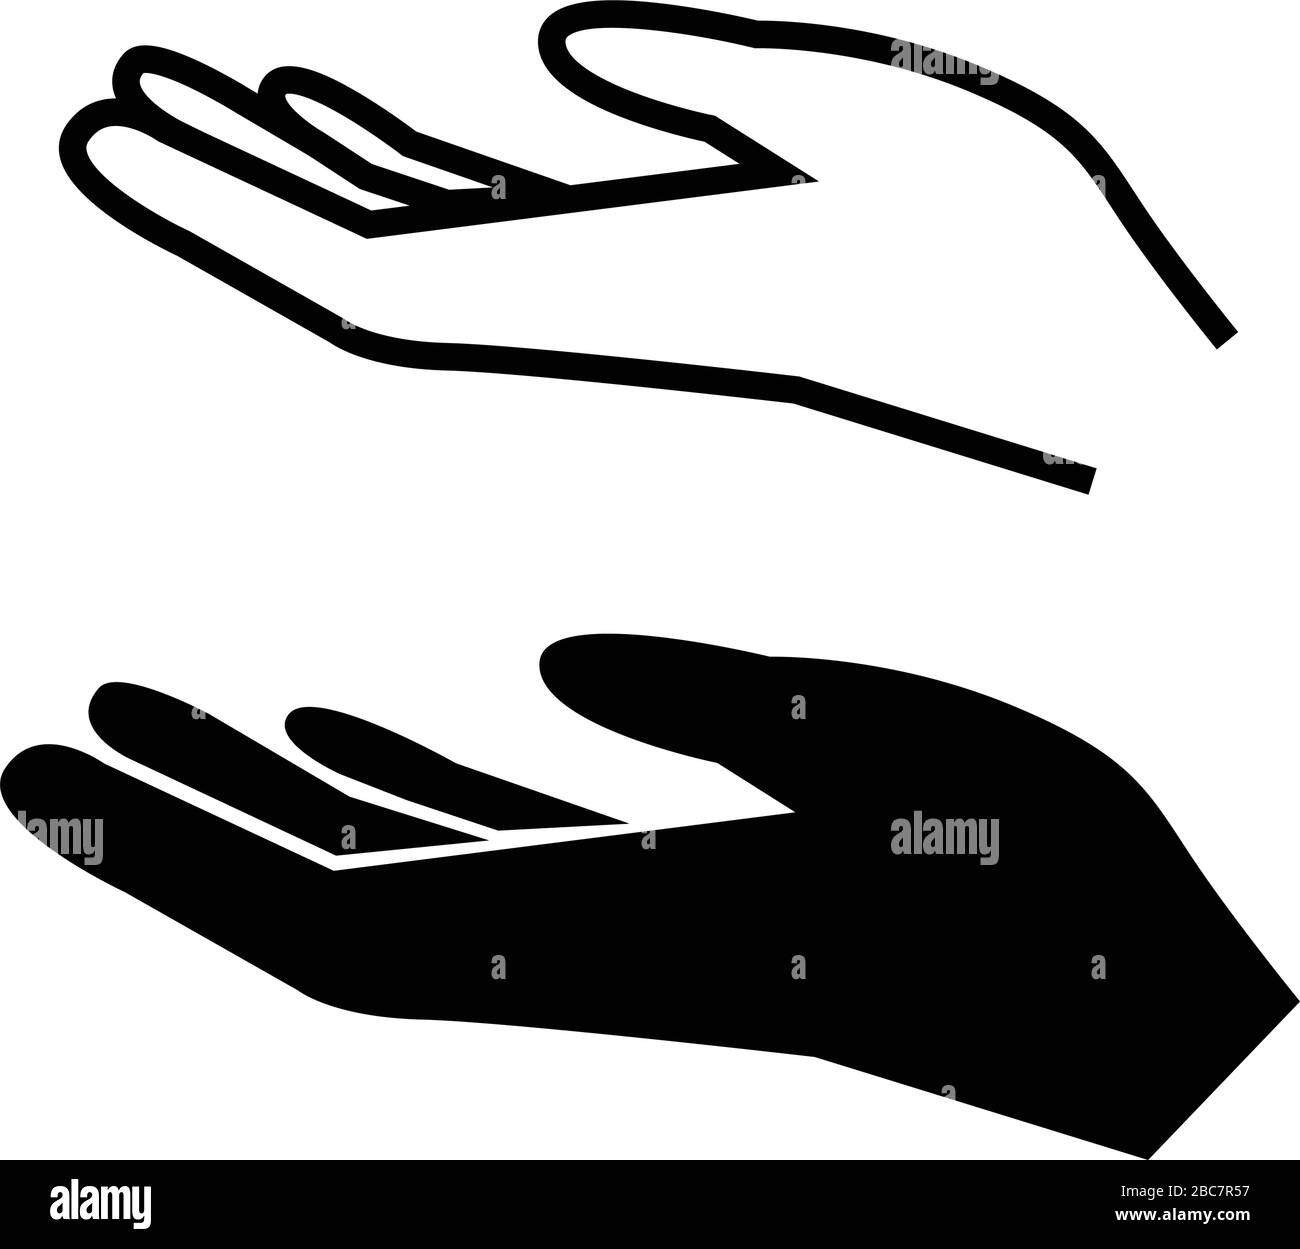 Ausgestreckte Hand Vektor Illustration flach Design isoliert auf weißem Hintergrund Geste Hände Handflächen Demonstrationen Stock Vektor